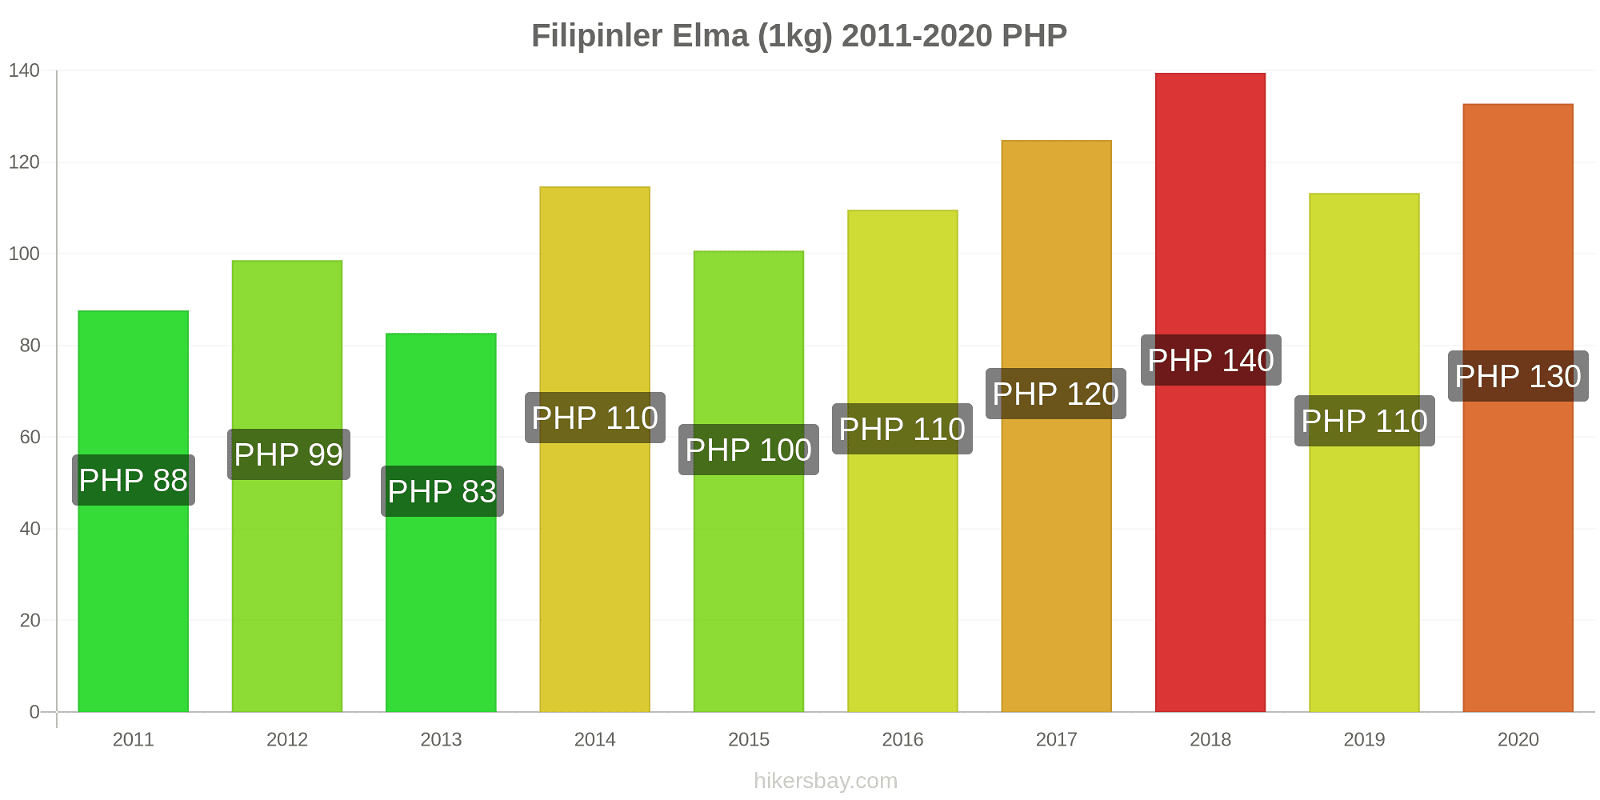 Filipinler fiyat değişiklikleri Elma (1kg) hikersbay.com